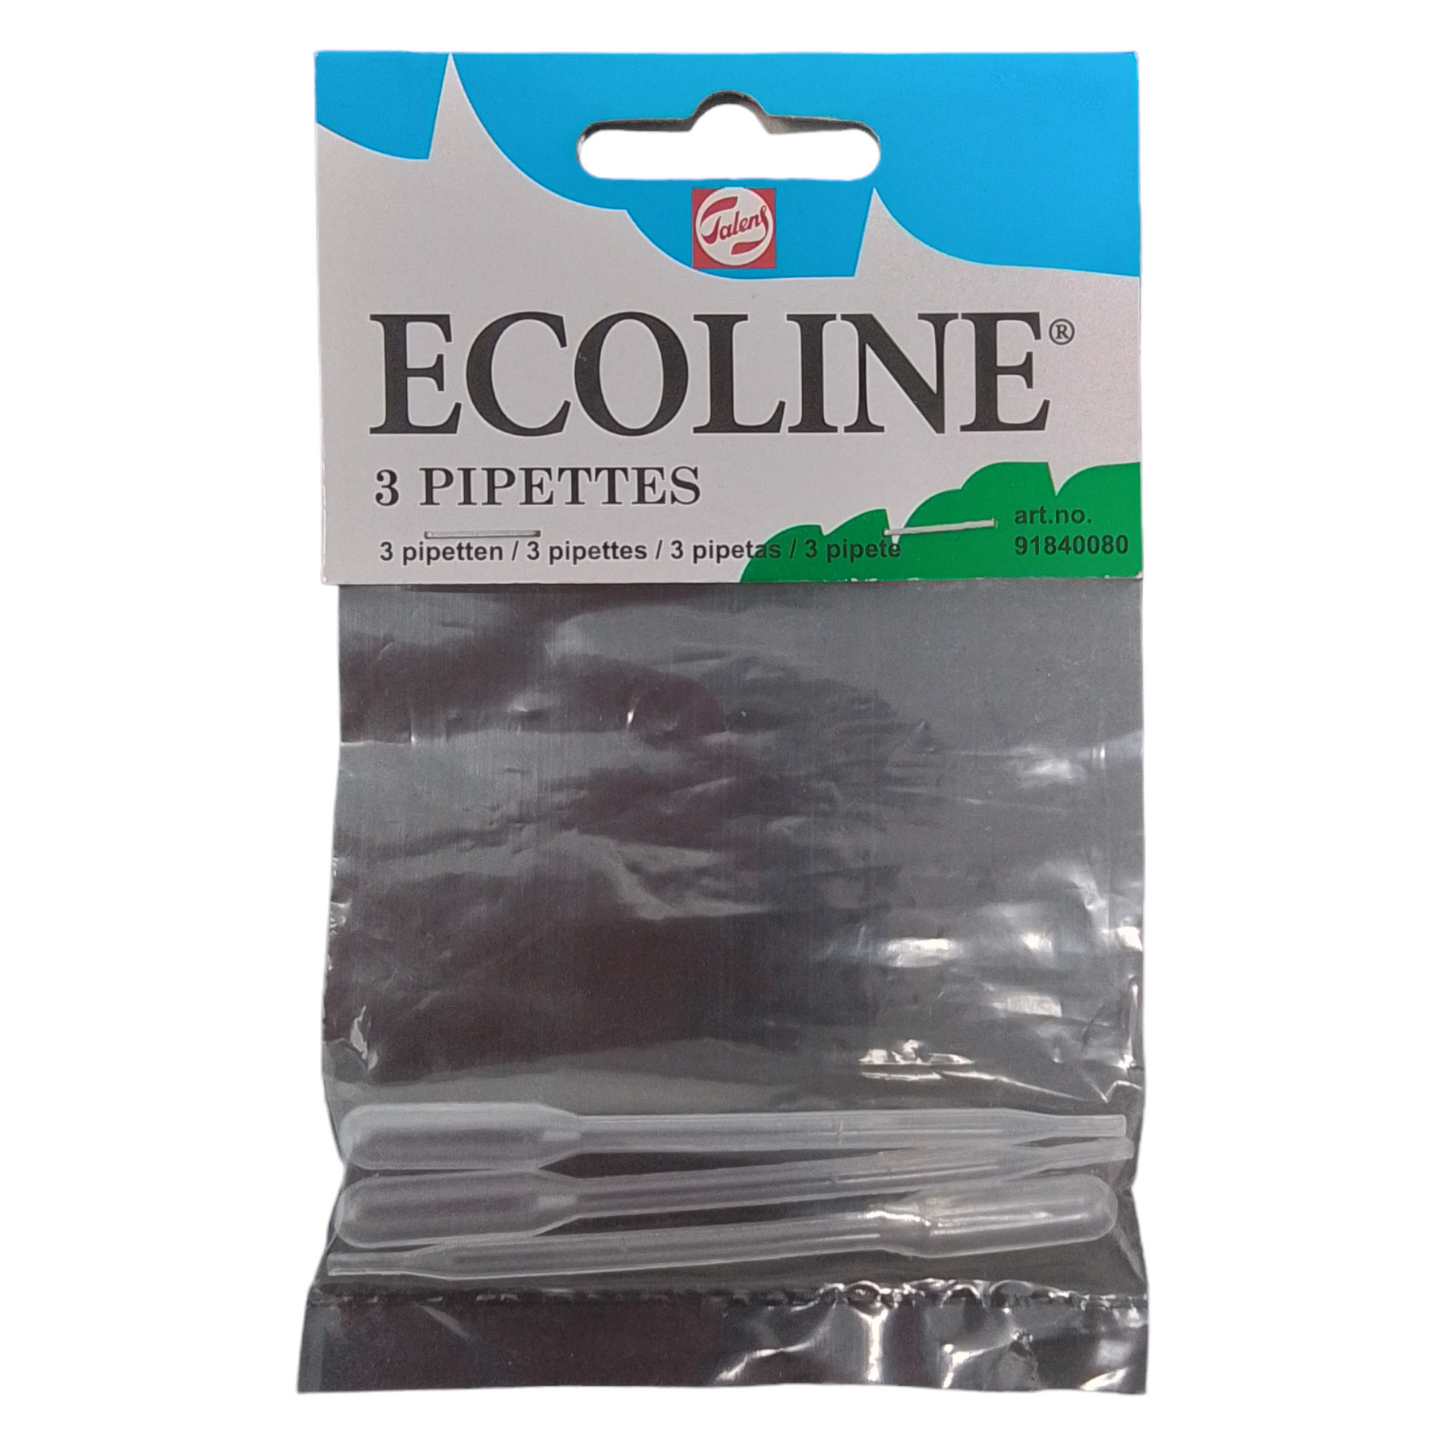 ECOLINE - 3 pipette